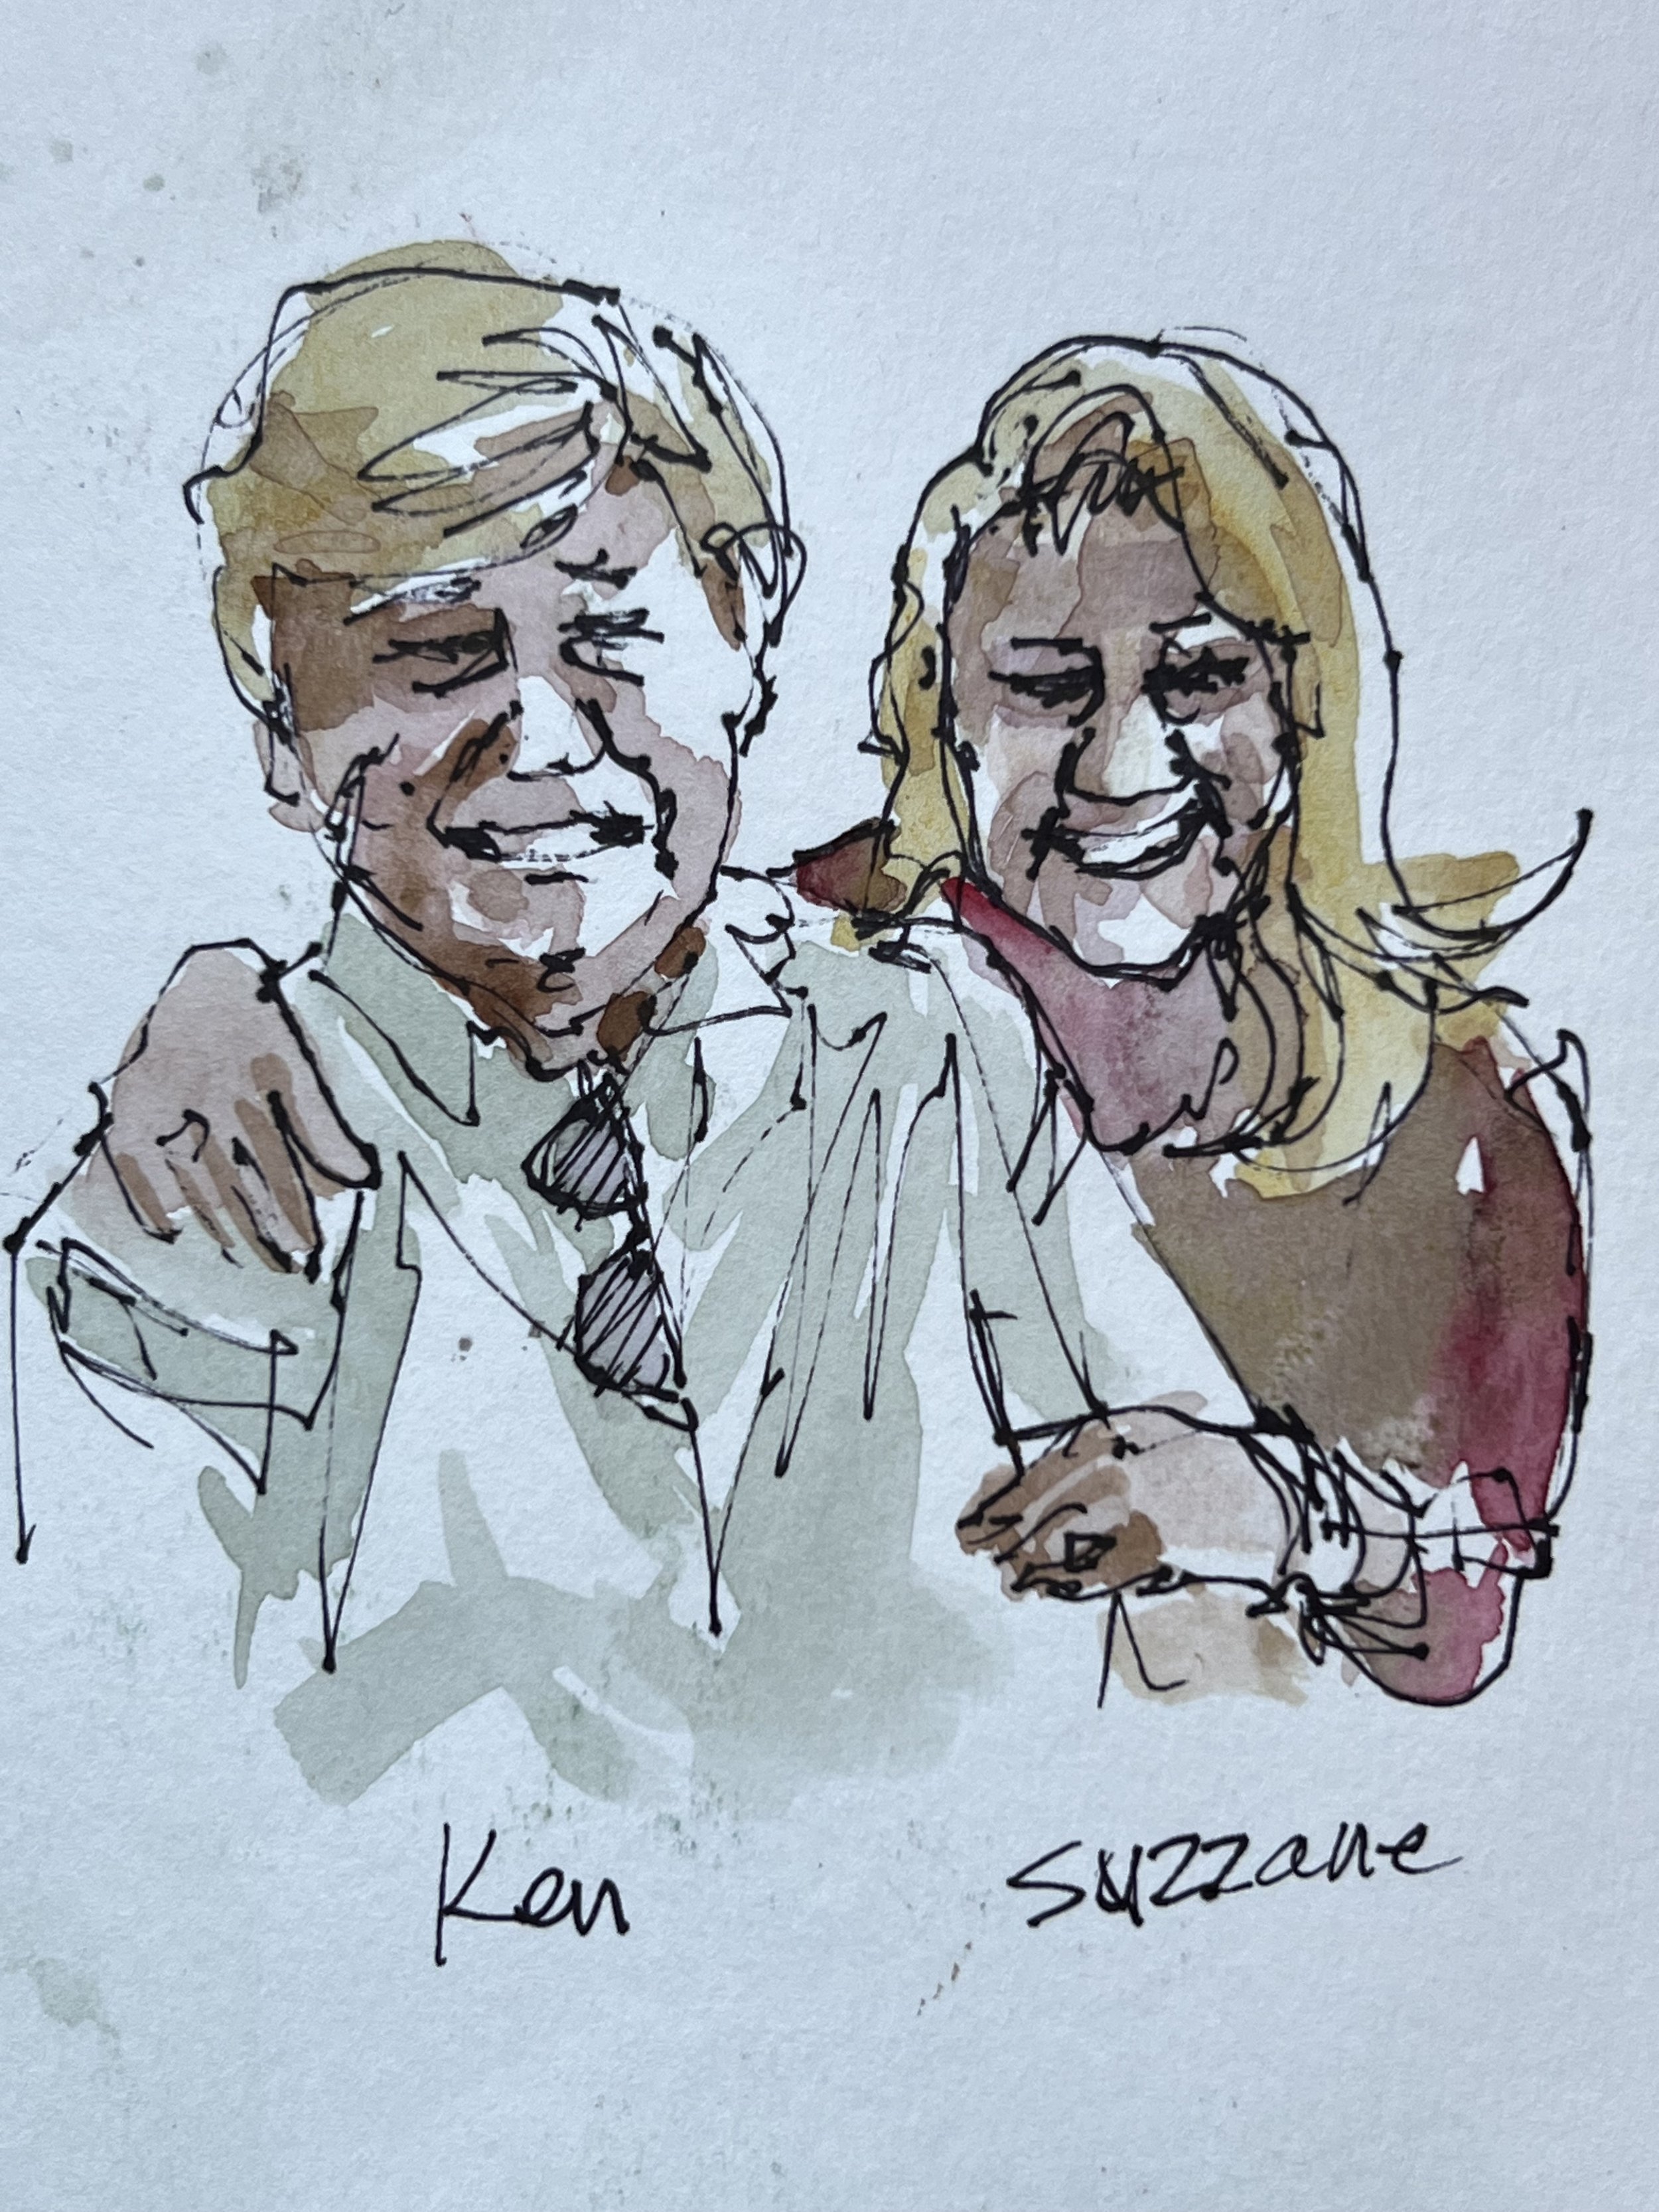 Ken & Suzanne